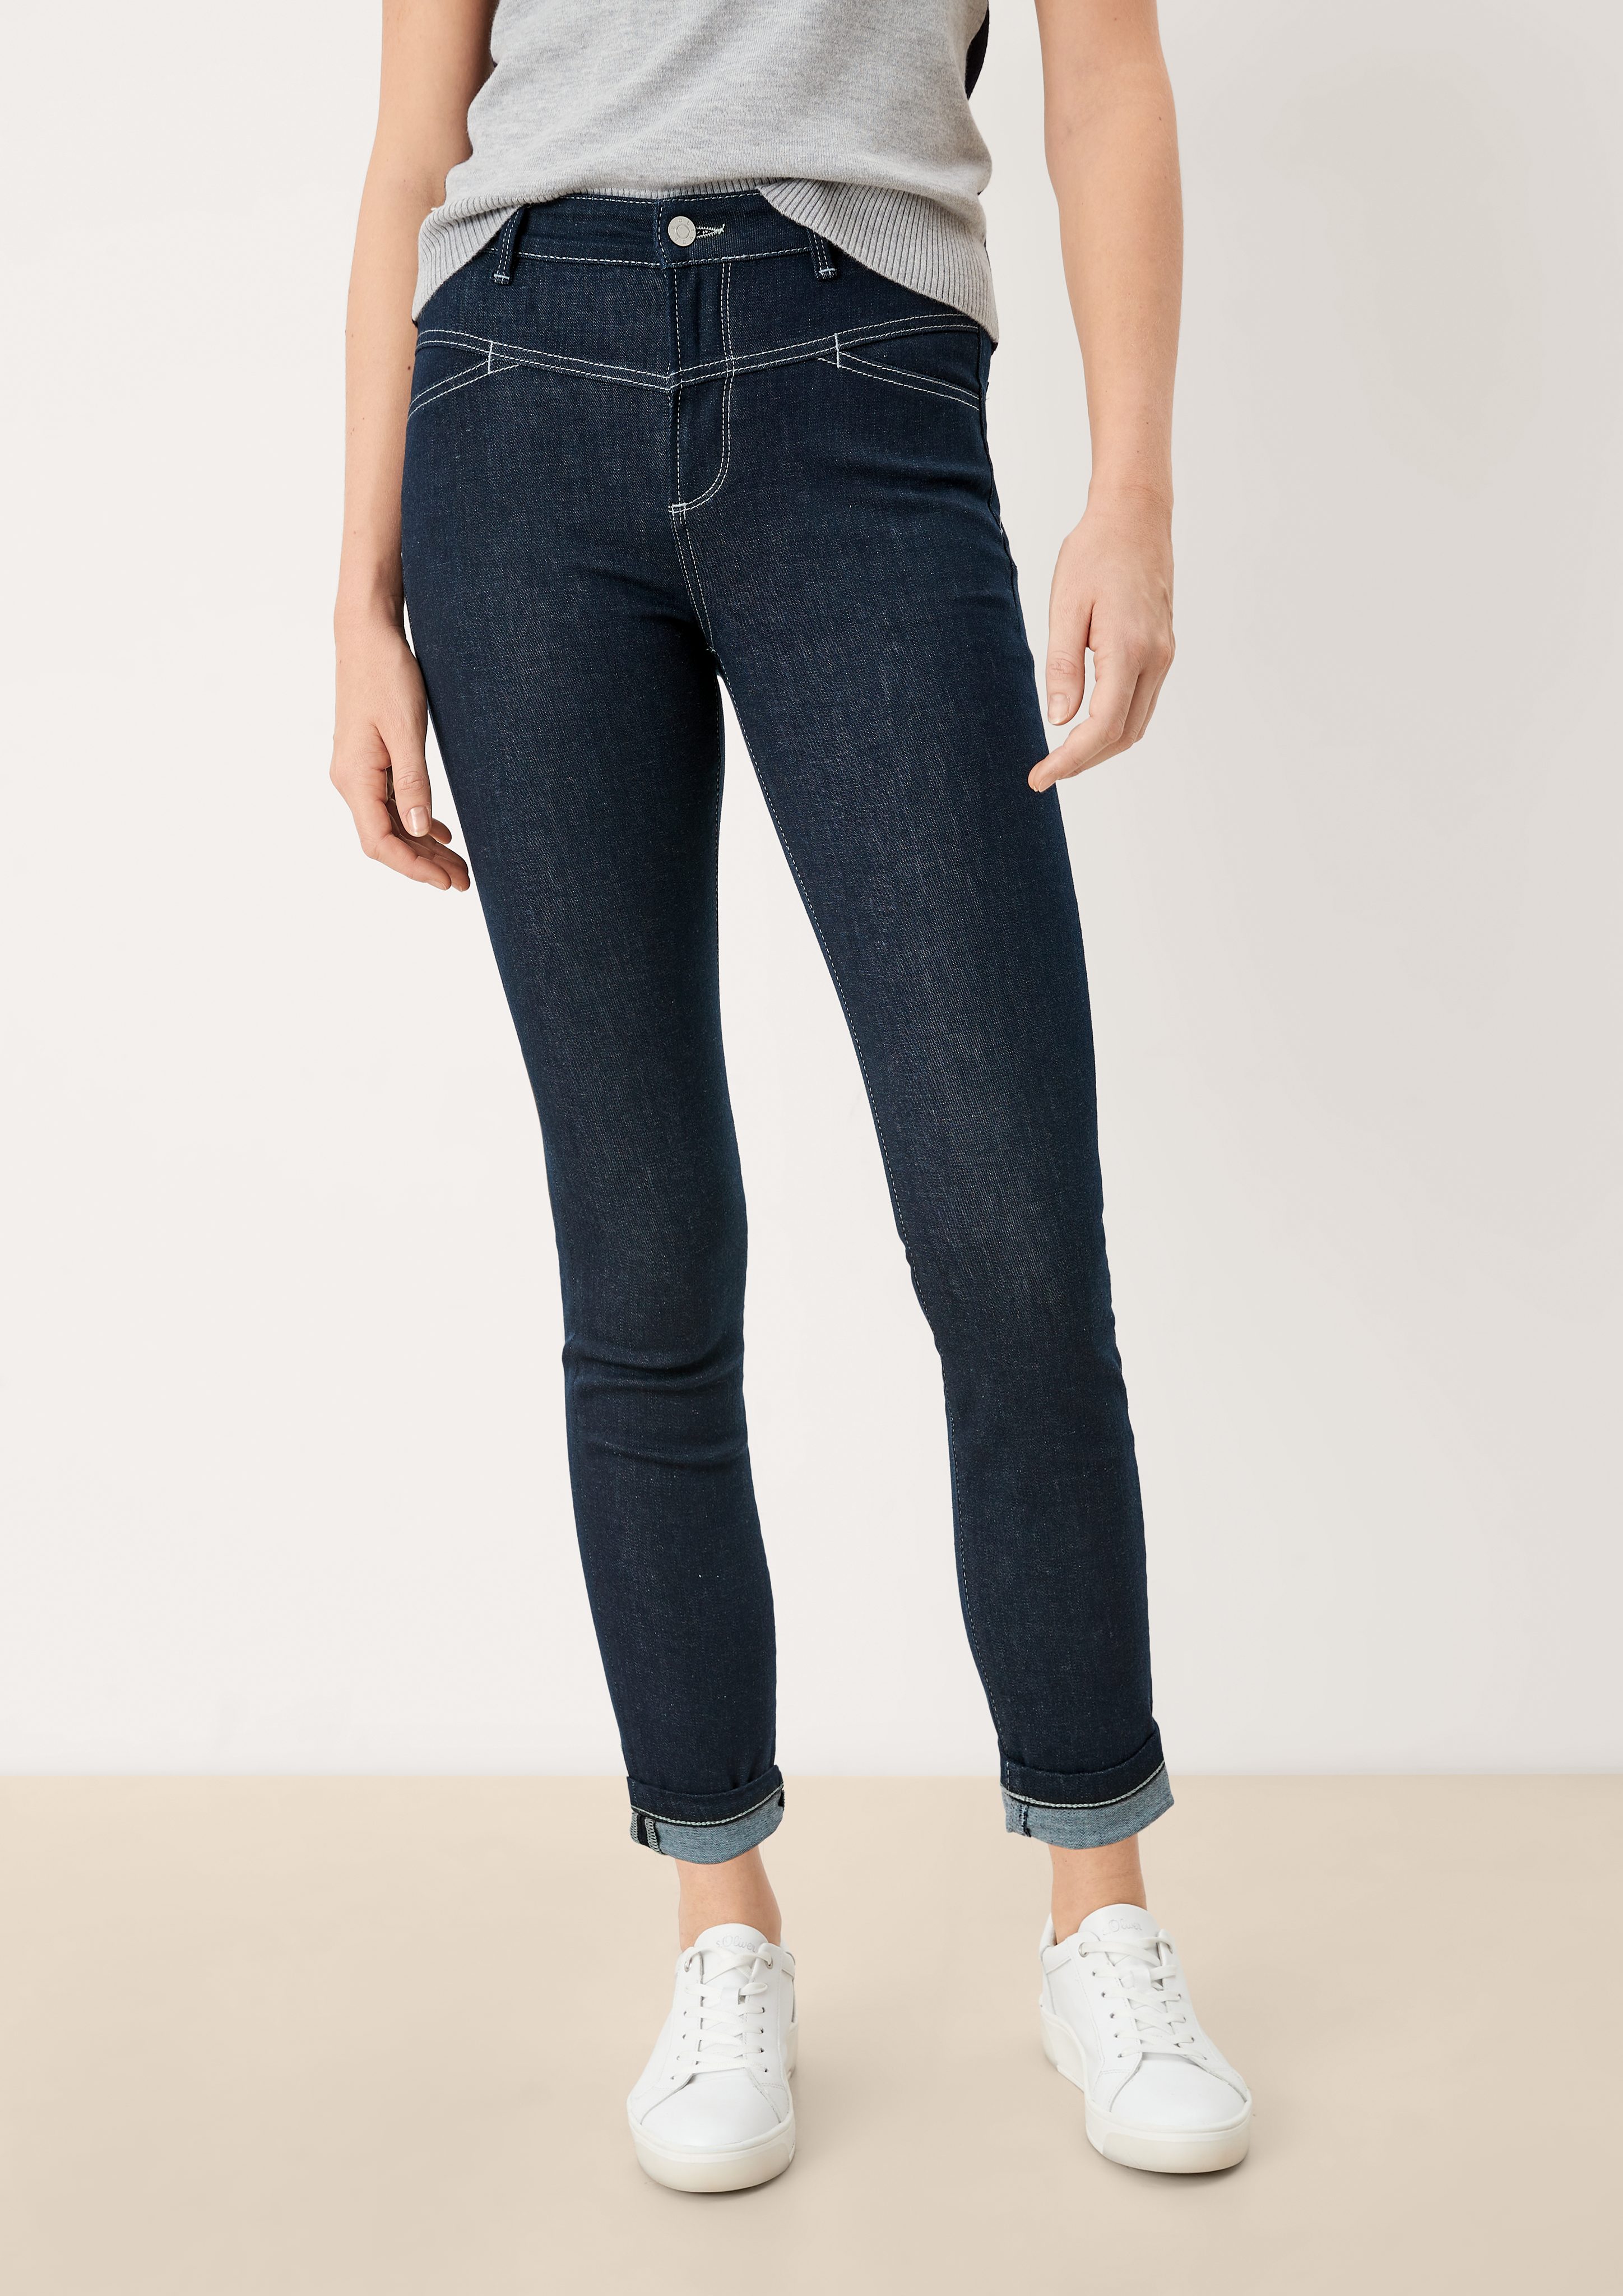 s.Oliver 5-Pocket-Jeans Skinny: Jeans mit Sattelbund Waschung | Skinny Jeans